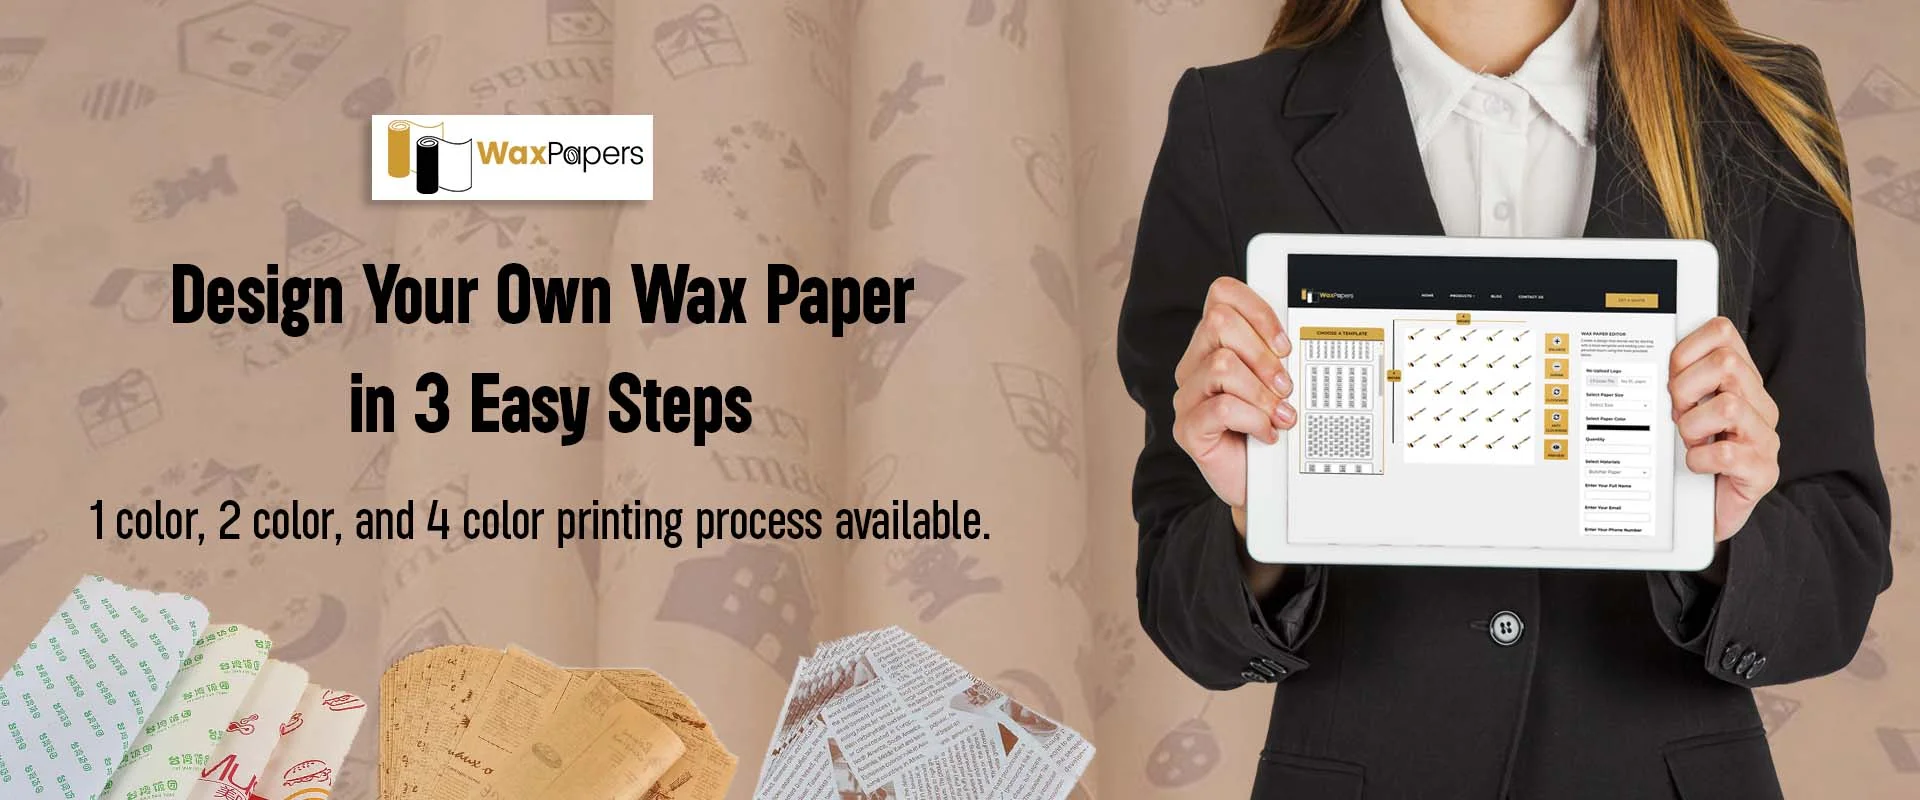 WaxPaper’s Design Online Software